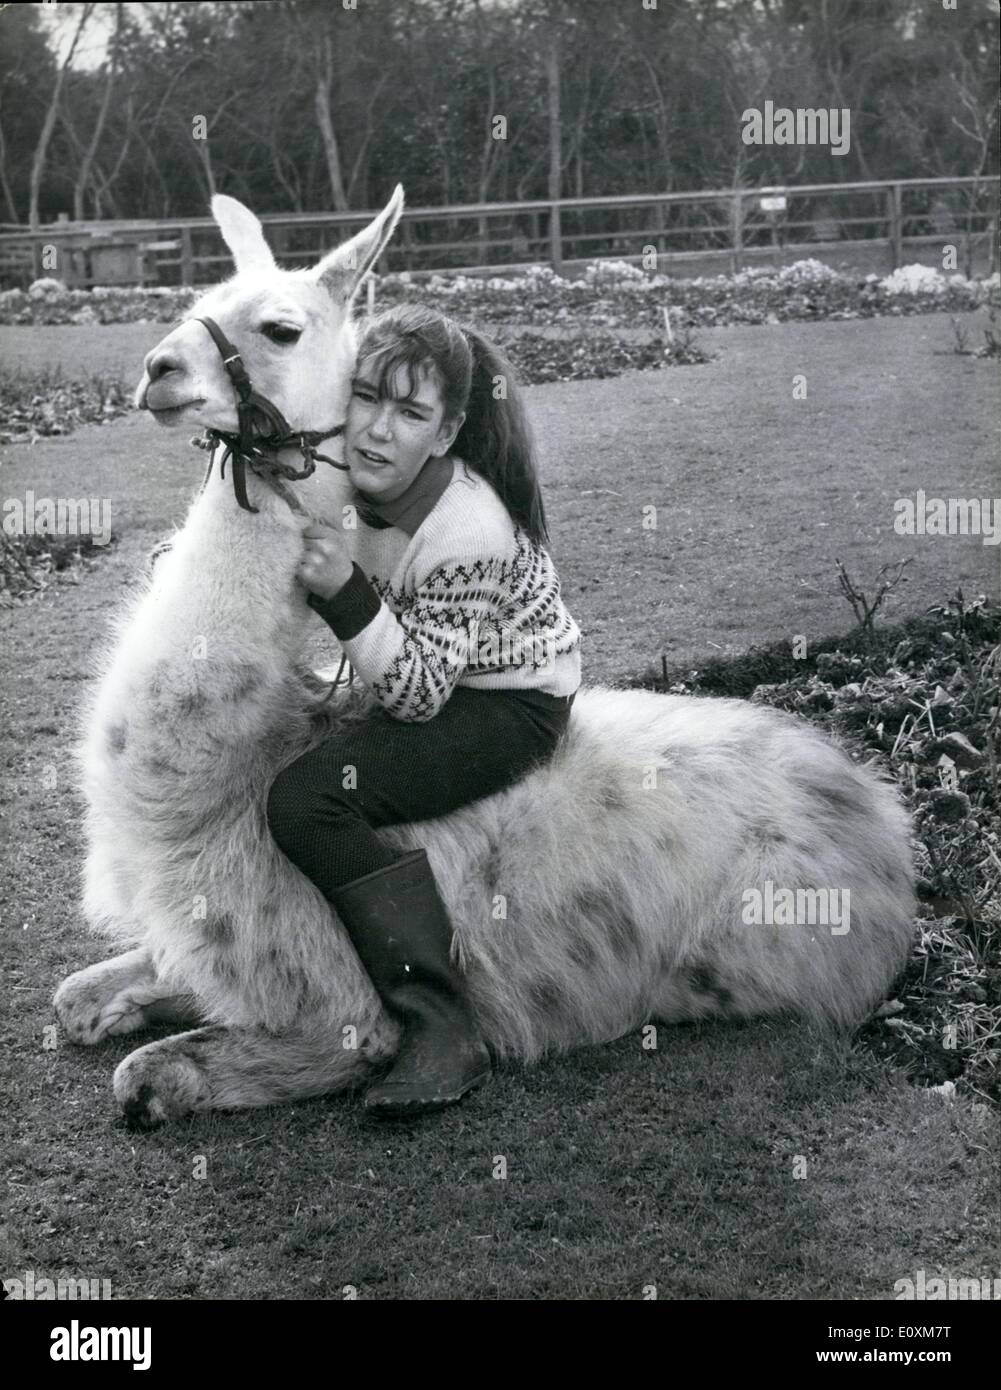 Apr. 04, 1967 - Julie prende una corsa - su un Llama.: 13-enne Julie Cook potrebbe sollevare qualche horsey sopracciglia è egli erano ad avventurarsi in prossimità del tappeto erboso di corse su questo caricabatterie bianco, e lei ha già causato una sorta di scandalo nella Llama composto a Flamingo Park Zoo, Yorkshire. Il fatto è che llama appena non trasportare passeggeri - si tratta di inaudita - e l'altra llama erano abbastanza indignata quando Julie rode il suo animale domestico llama, Libertà, lungo il loro paddock l' altro giorno Foto Stock